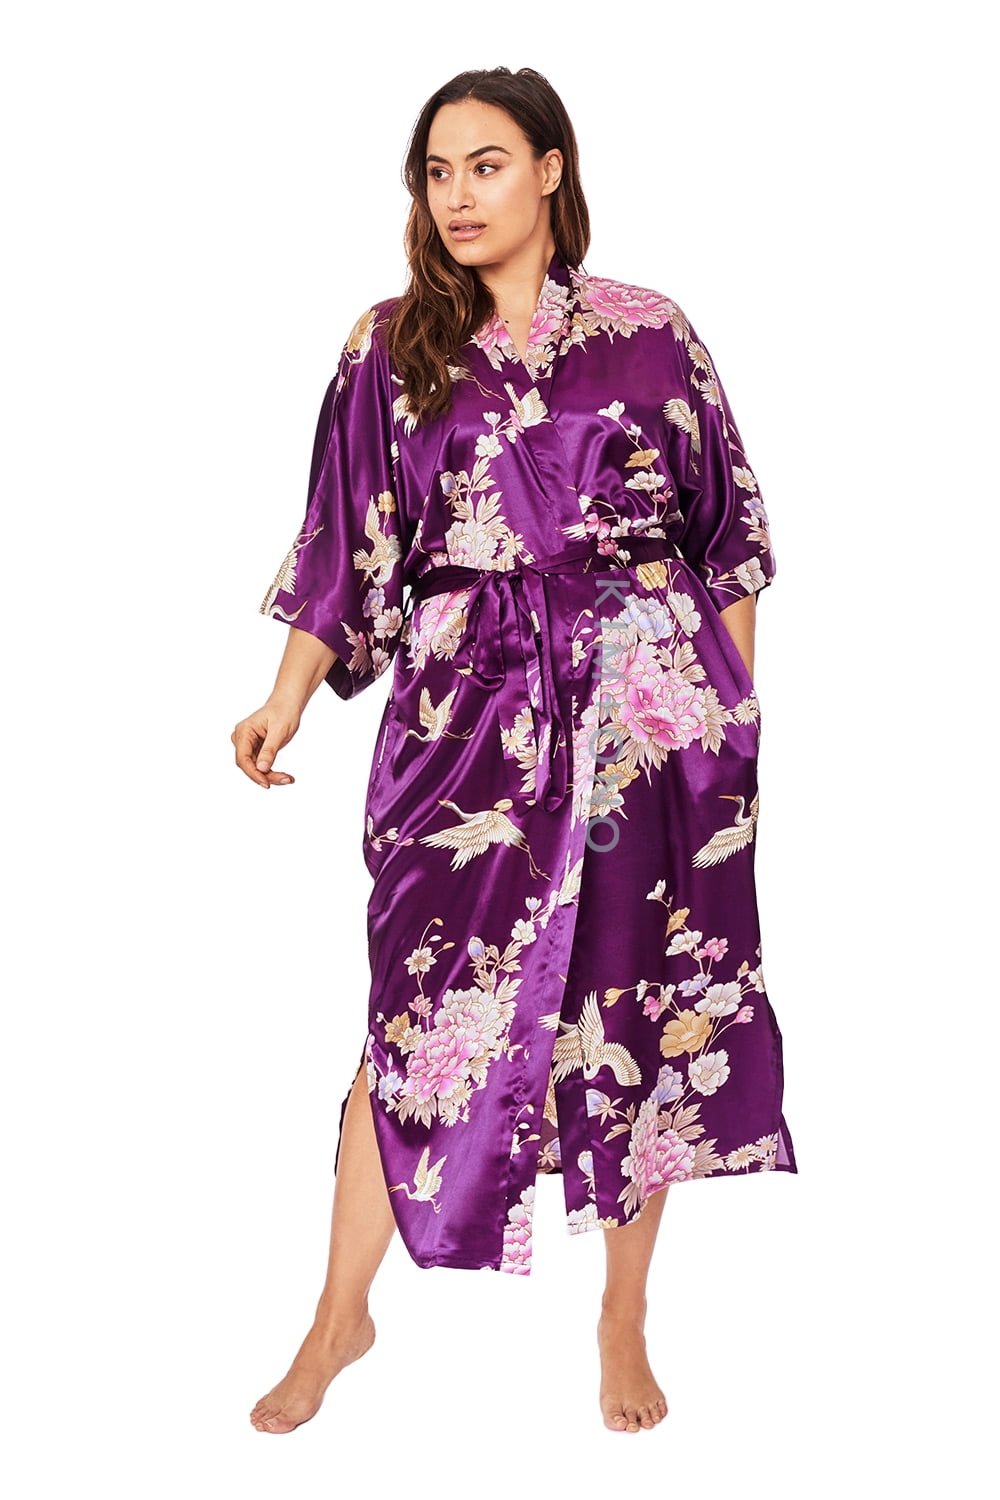 One Size Womens Satin Kimono Dressing Gown V-Neck Kimono Robe Wedding Bridal Sleepwear Imitation Silk Bathrobe with Peacock or Flower Printing 